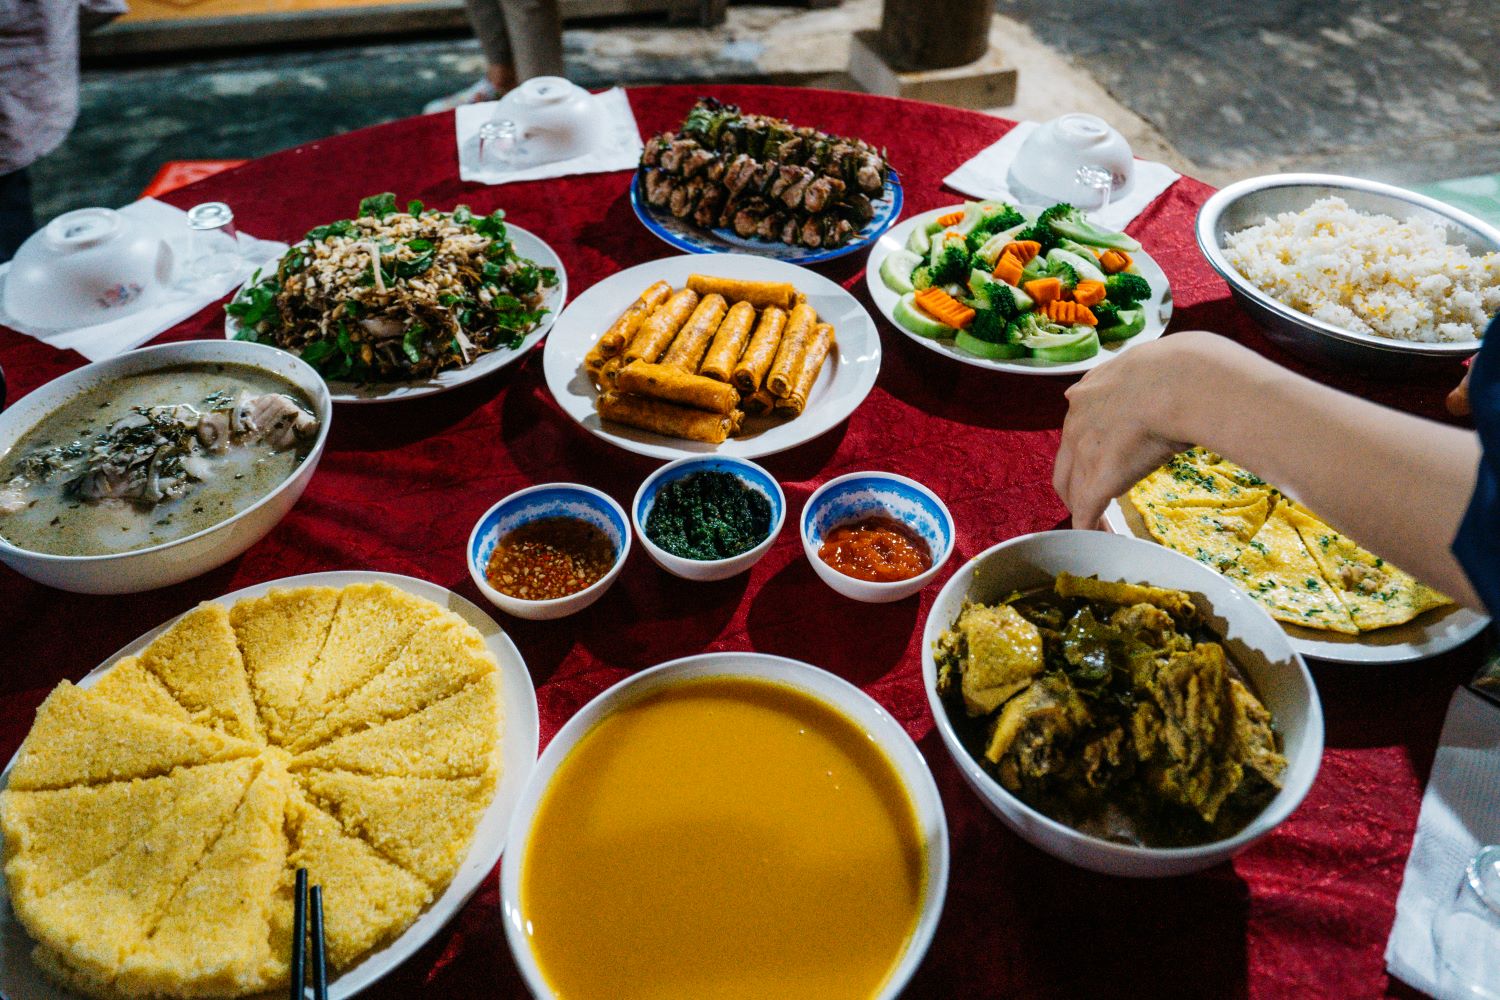 Bữa tối dân dã mà ngon miệng tại nhà người dân ở làng Tân Hóa.